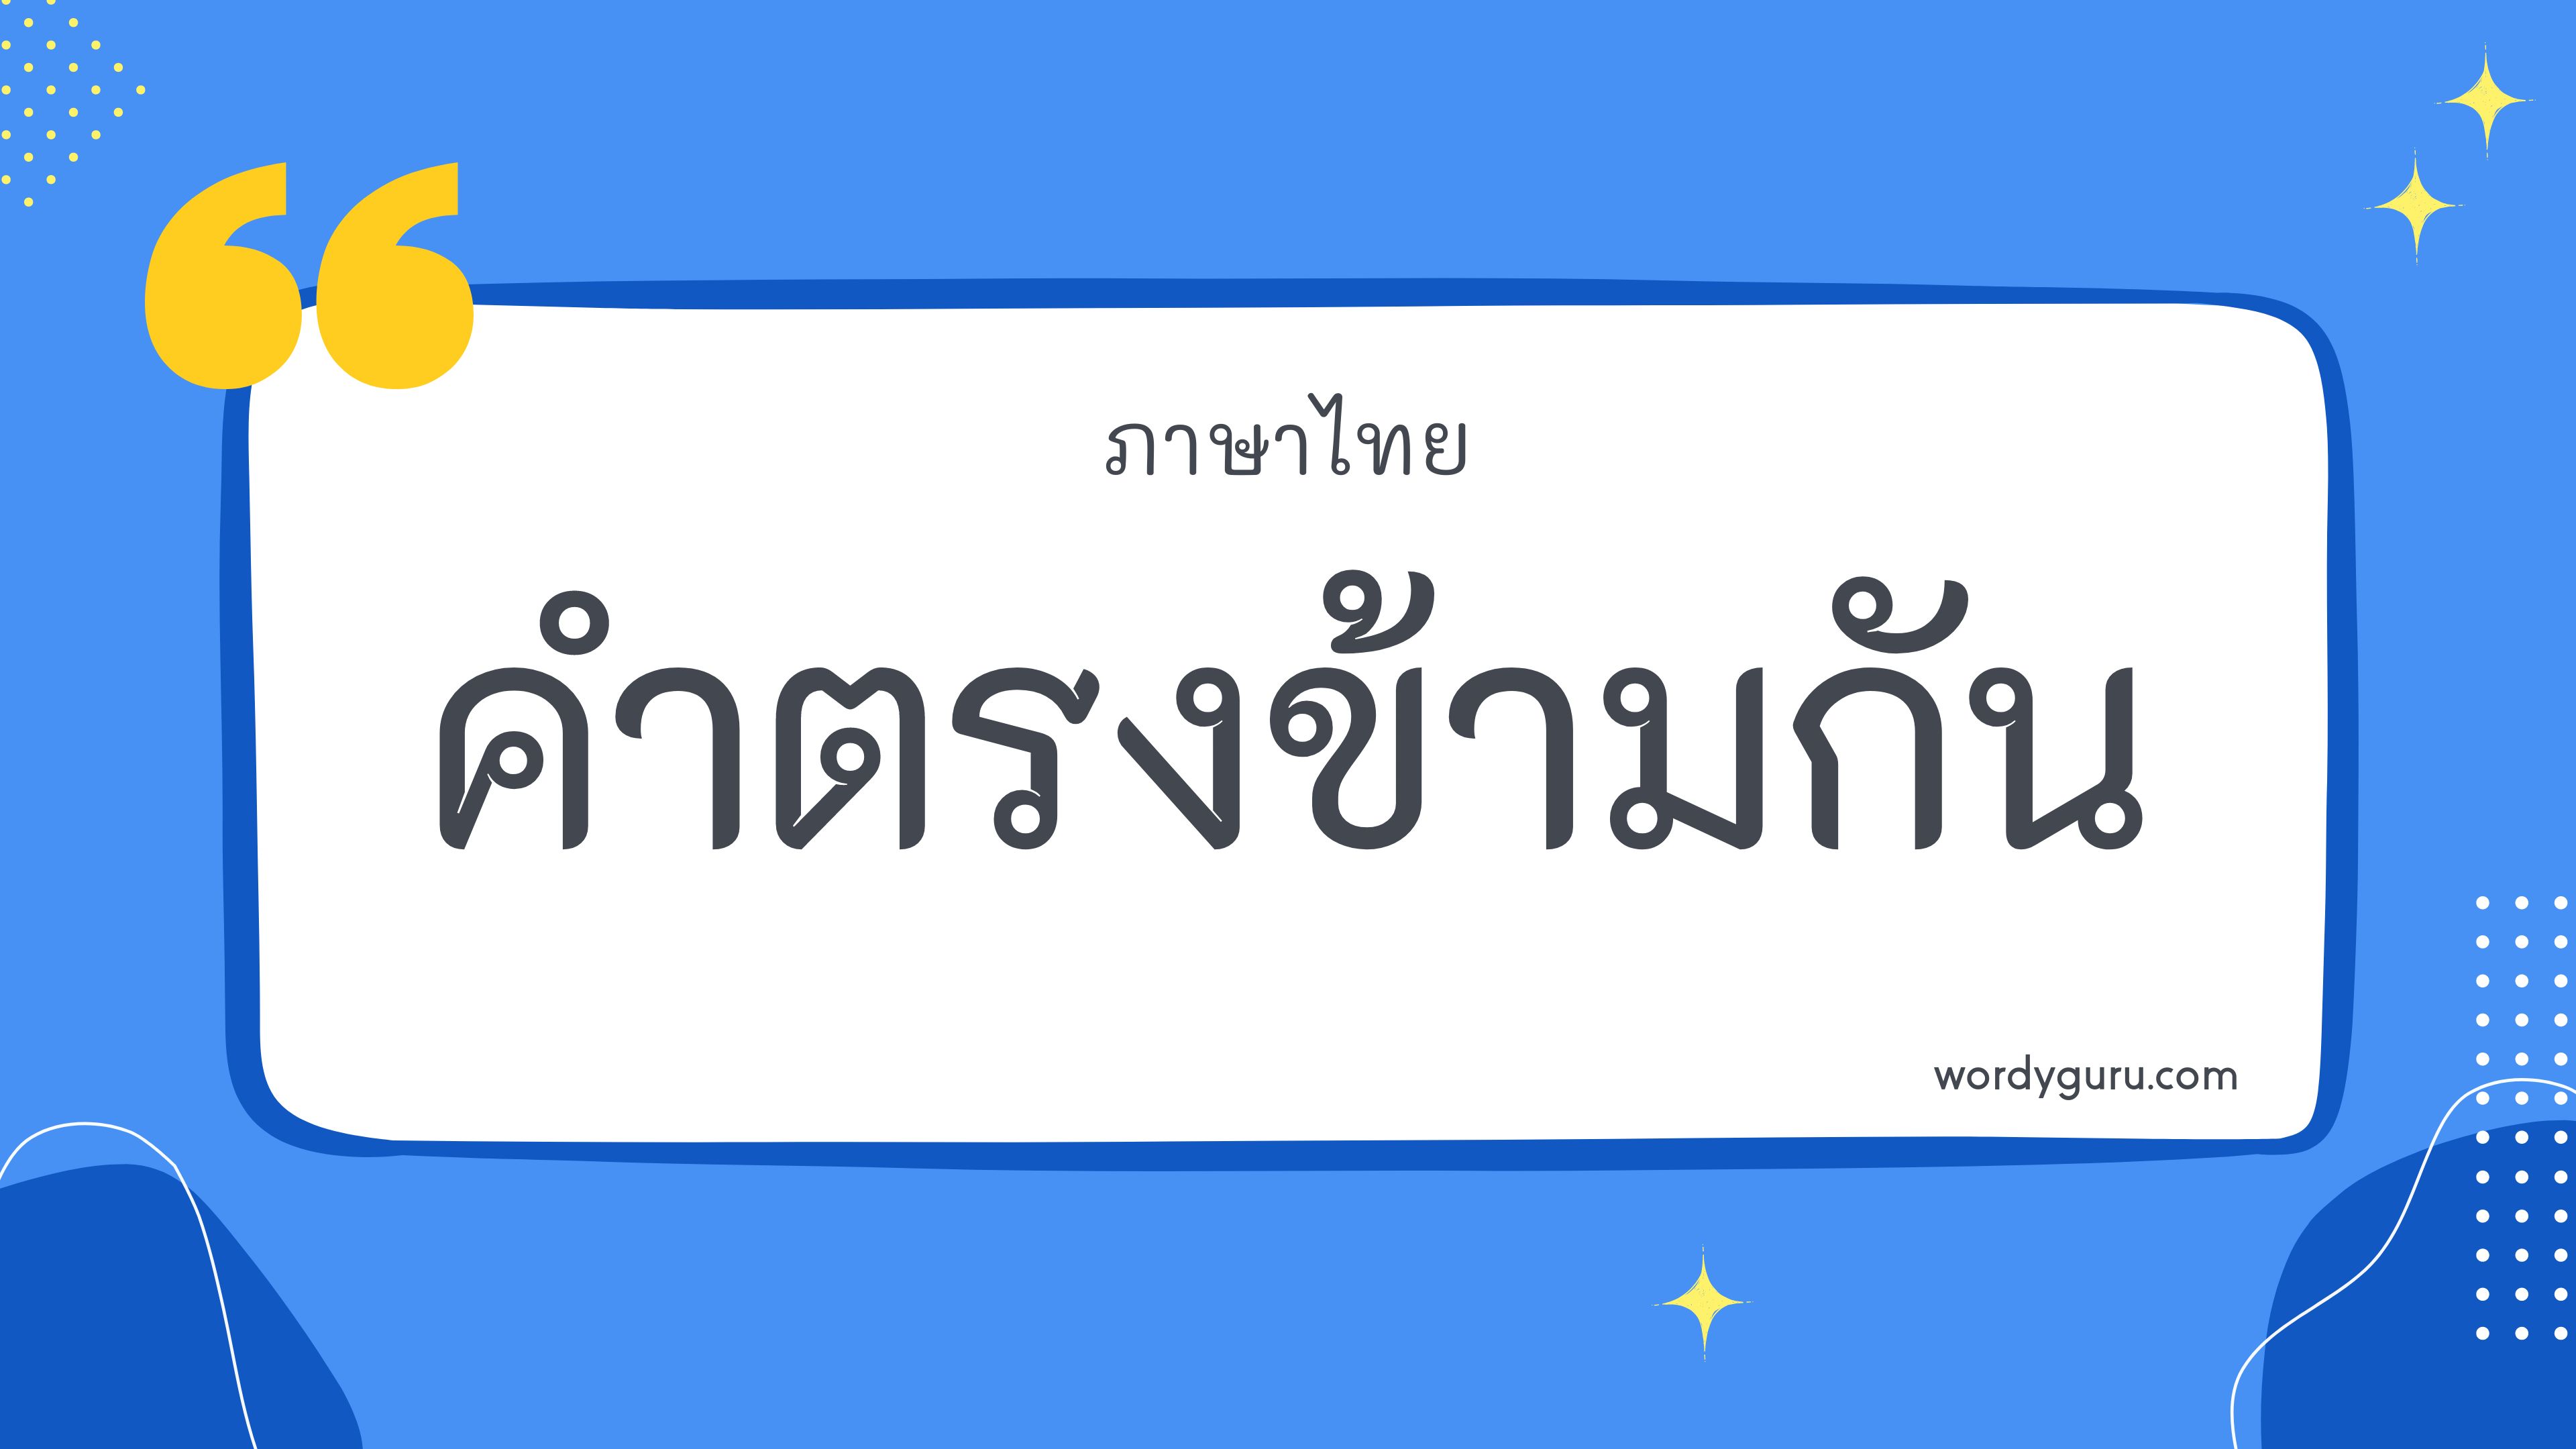 คำตรงข้าม ในภาษาไทยที่นิยมใช้งาน และค้นหาบ่อย รวมไว้ครบถ้วน